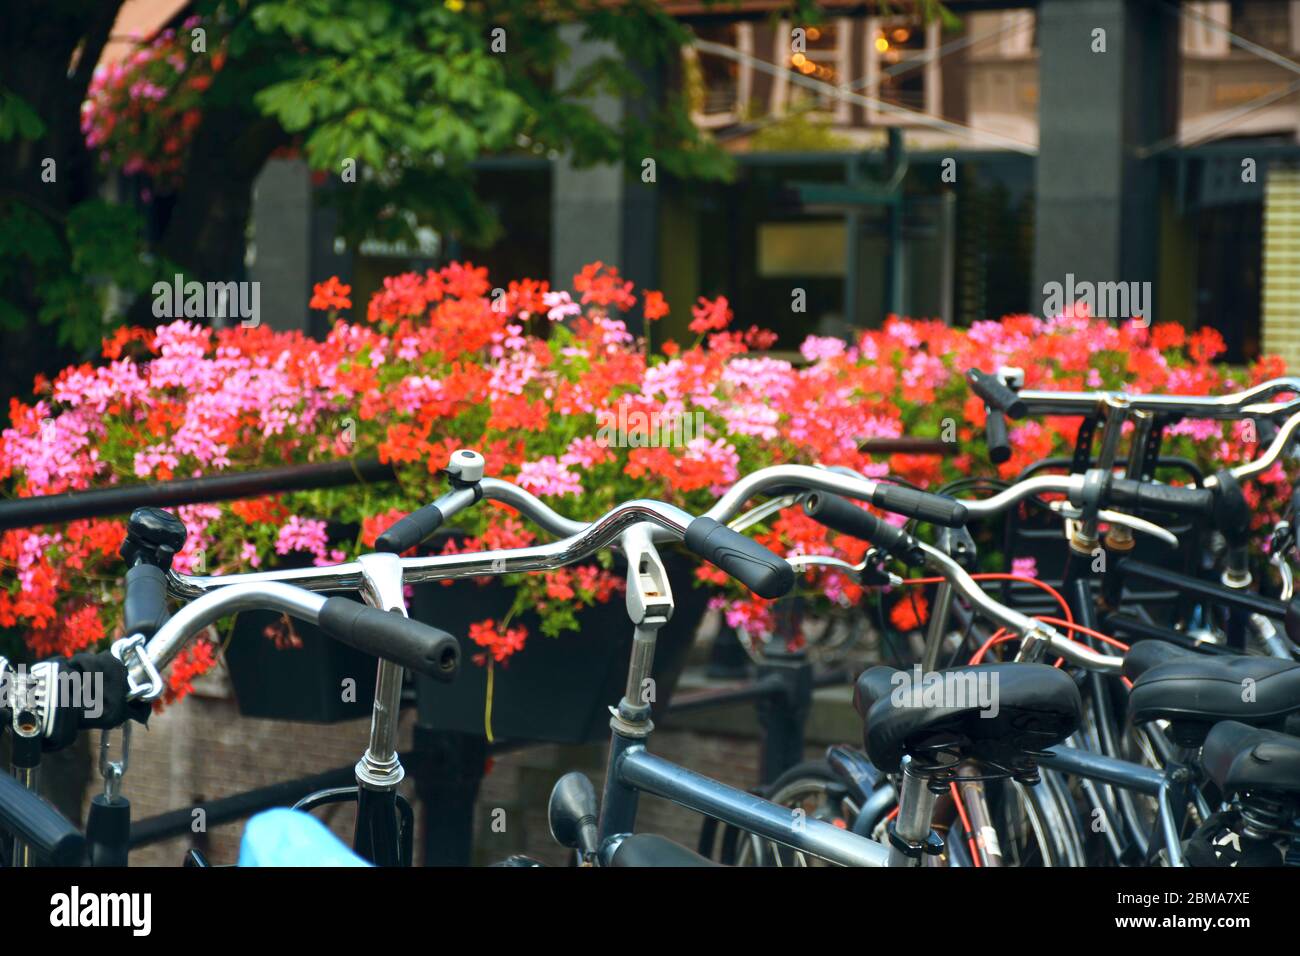 Vue estivale sur les vélos. Bicyclettes garées sur un pont fleuri au-dessus des canaux d'Utrecht, pays-Bas. Scène hollandaise typique. Banque D'Images